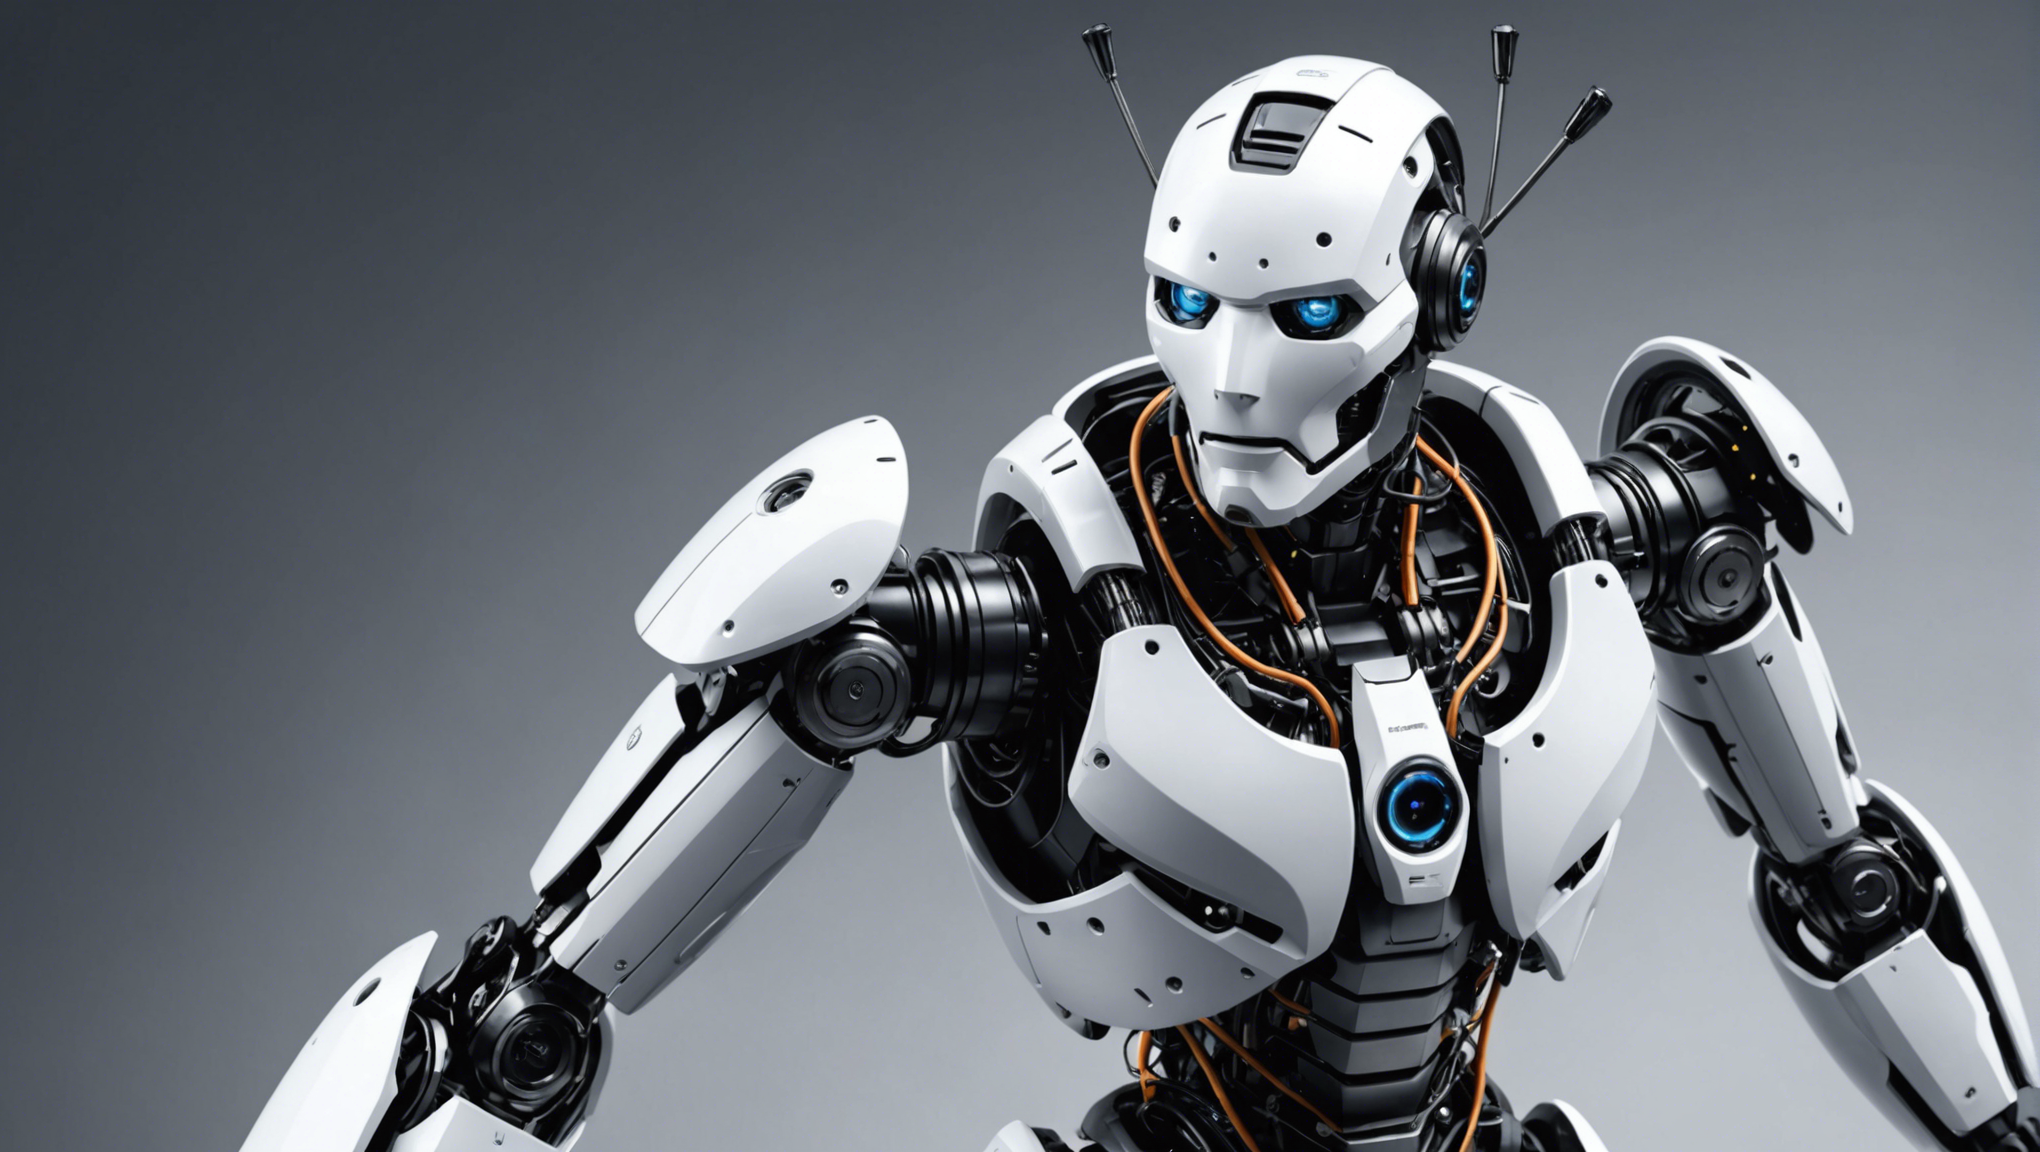 découvrez les incroyables robots de l'innorobo 2014 : une révolution technologique à portée de main! visitez l'innorobo pour voir les dernières avancées en matière de robotique et profiter de cette occasion unique pour découvrir les robots qui changeront le monde.